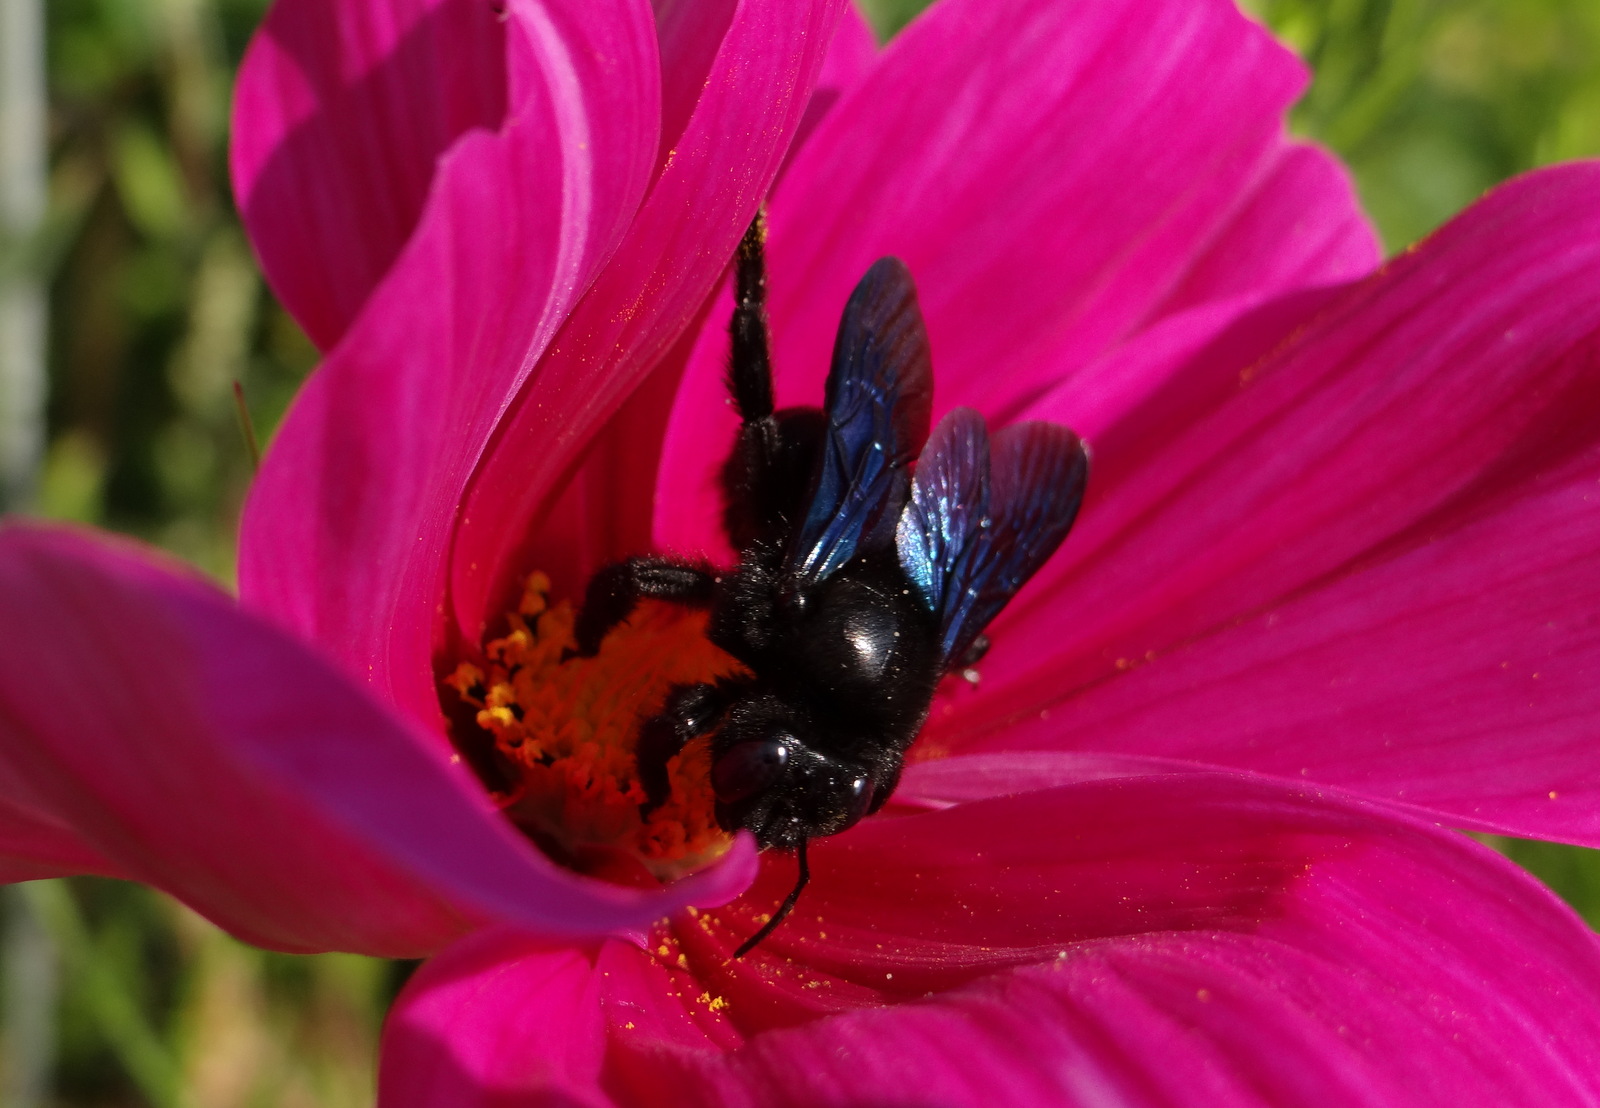 Les abeilles sauvages visitent assidument les fleurs du jardinet